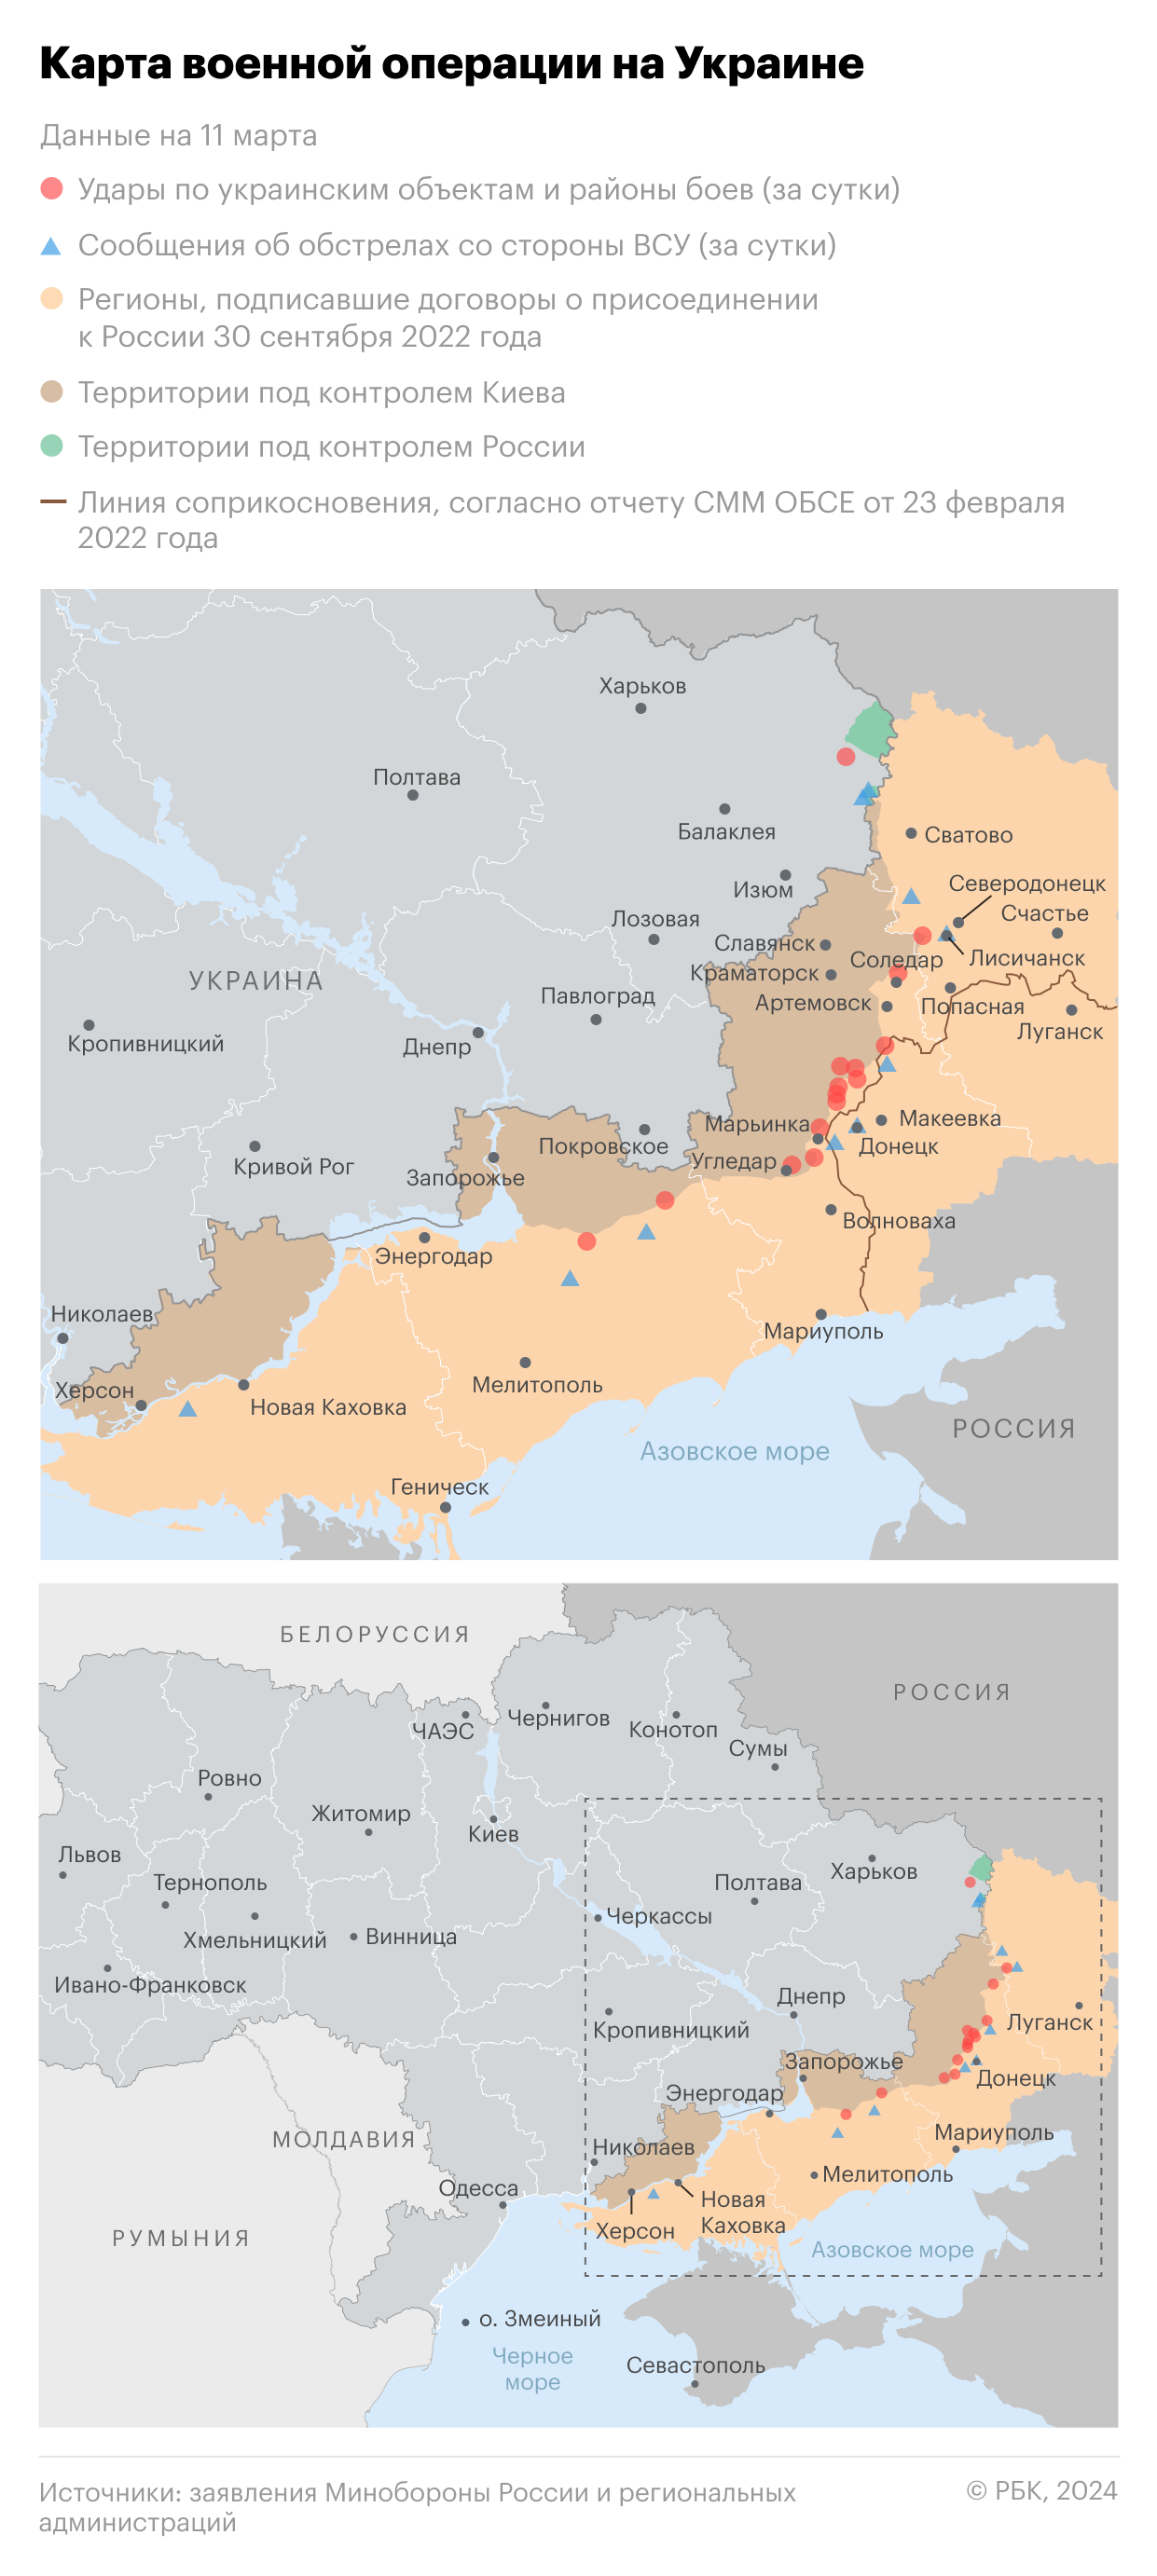 Военная операция на Украине. Карта на 11 марта